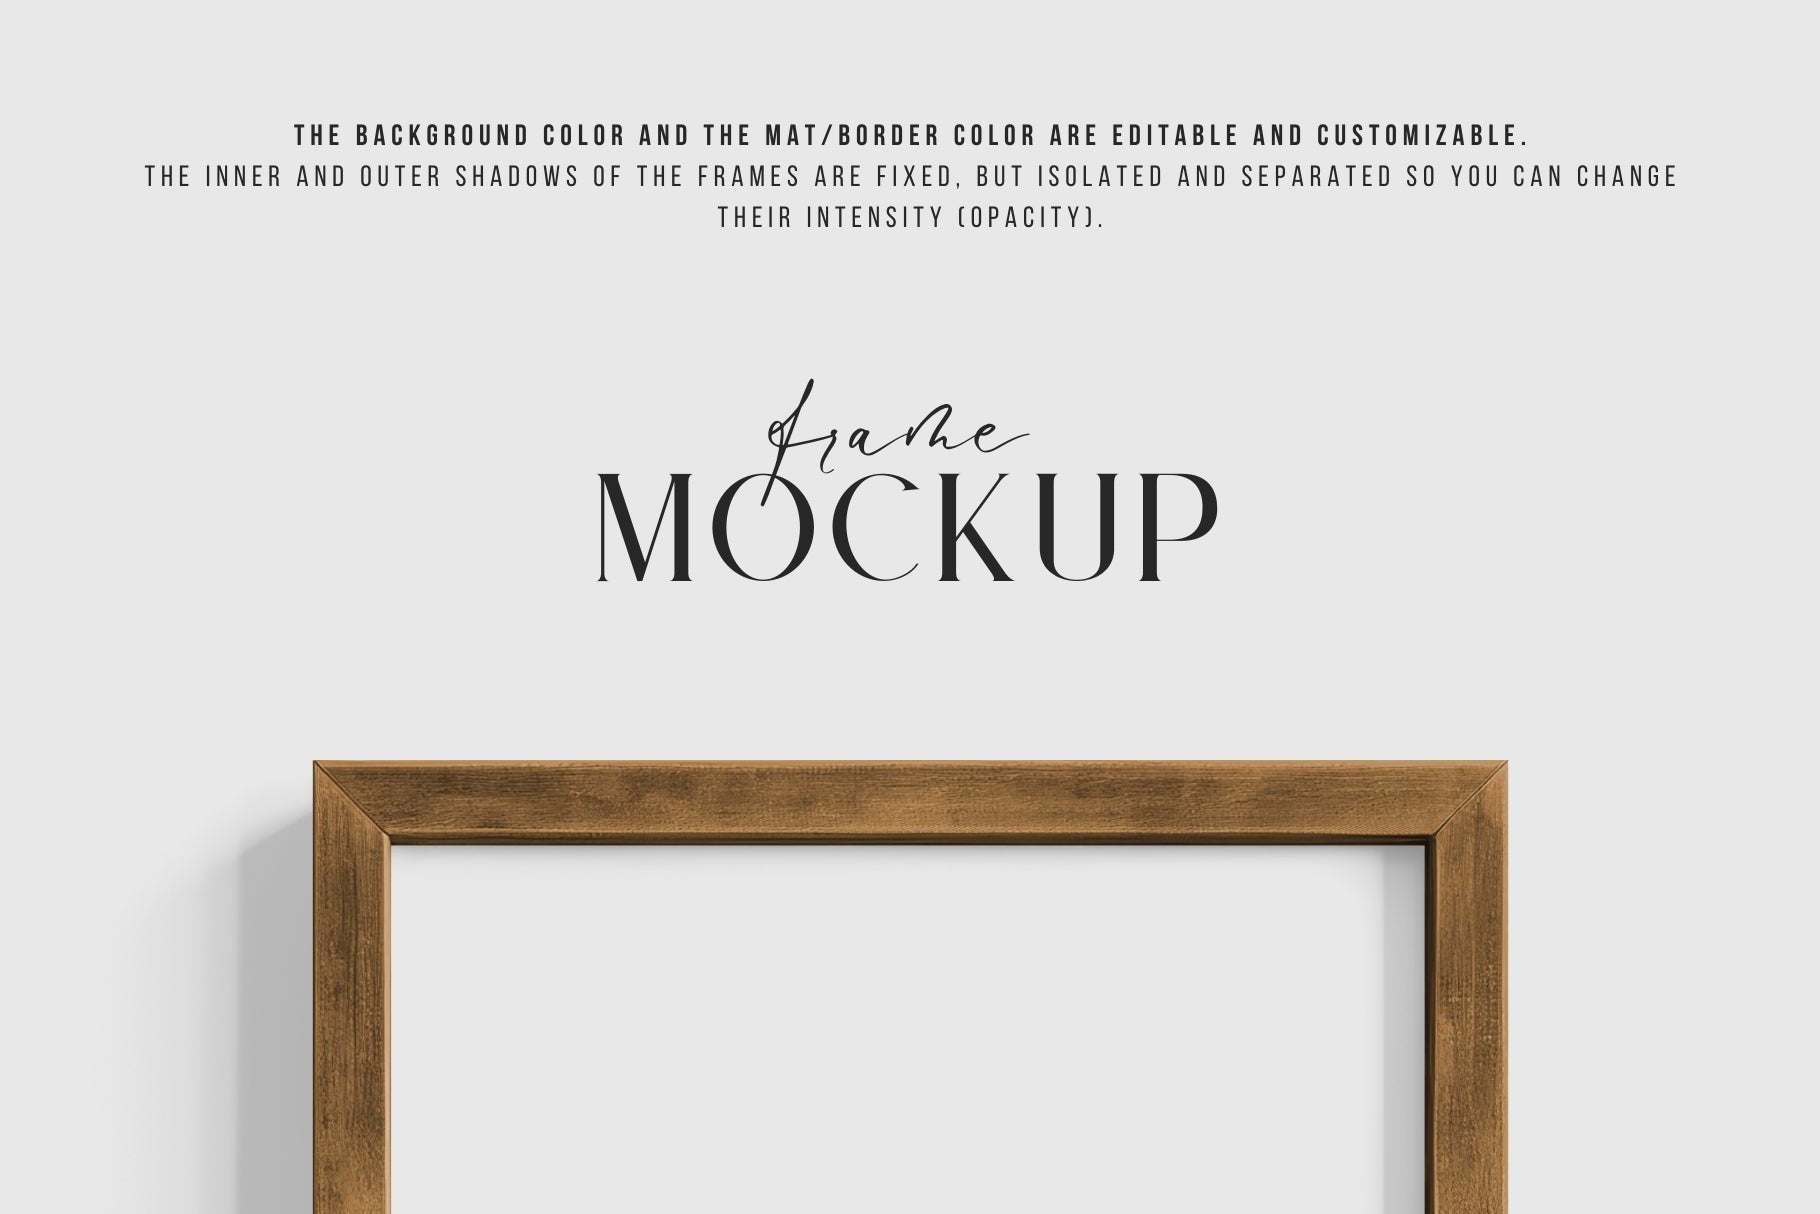 Thick Wooden Frame Mockup 3:4 Portrait Vertical Frame Mockup PNG + PSD Template